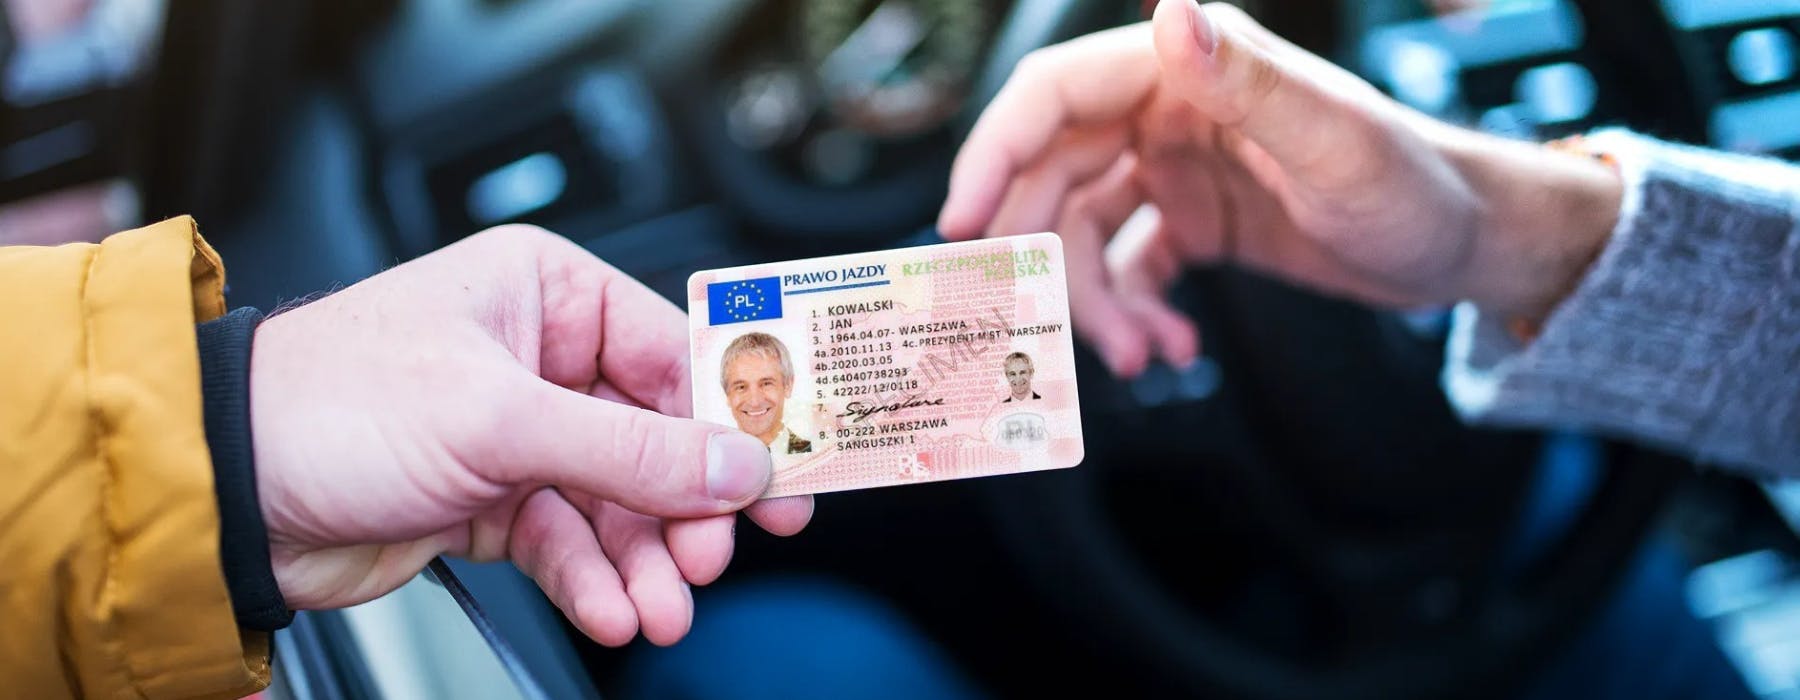 Polskie prawo jazdy w Niemczech